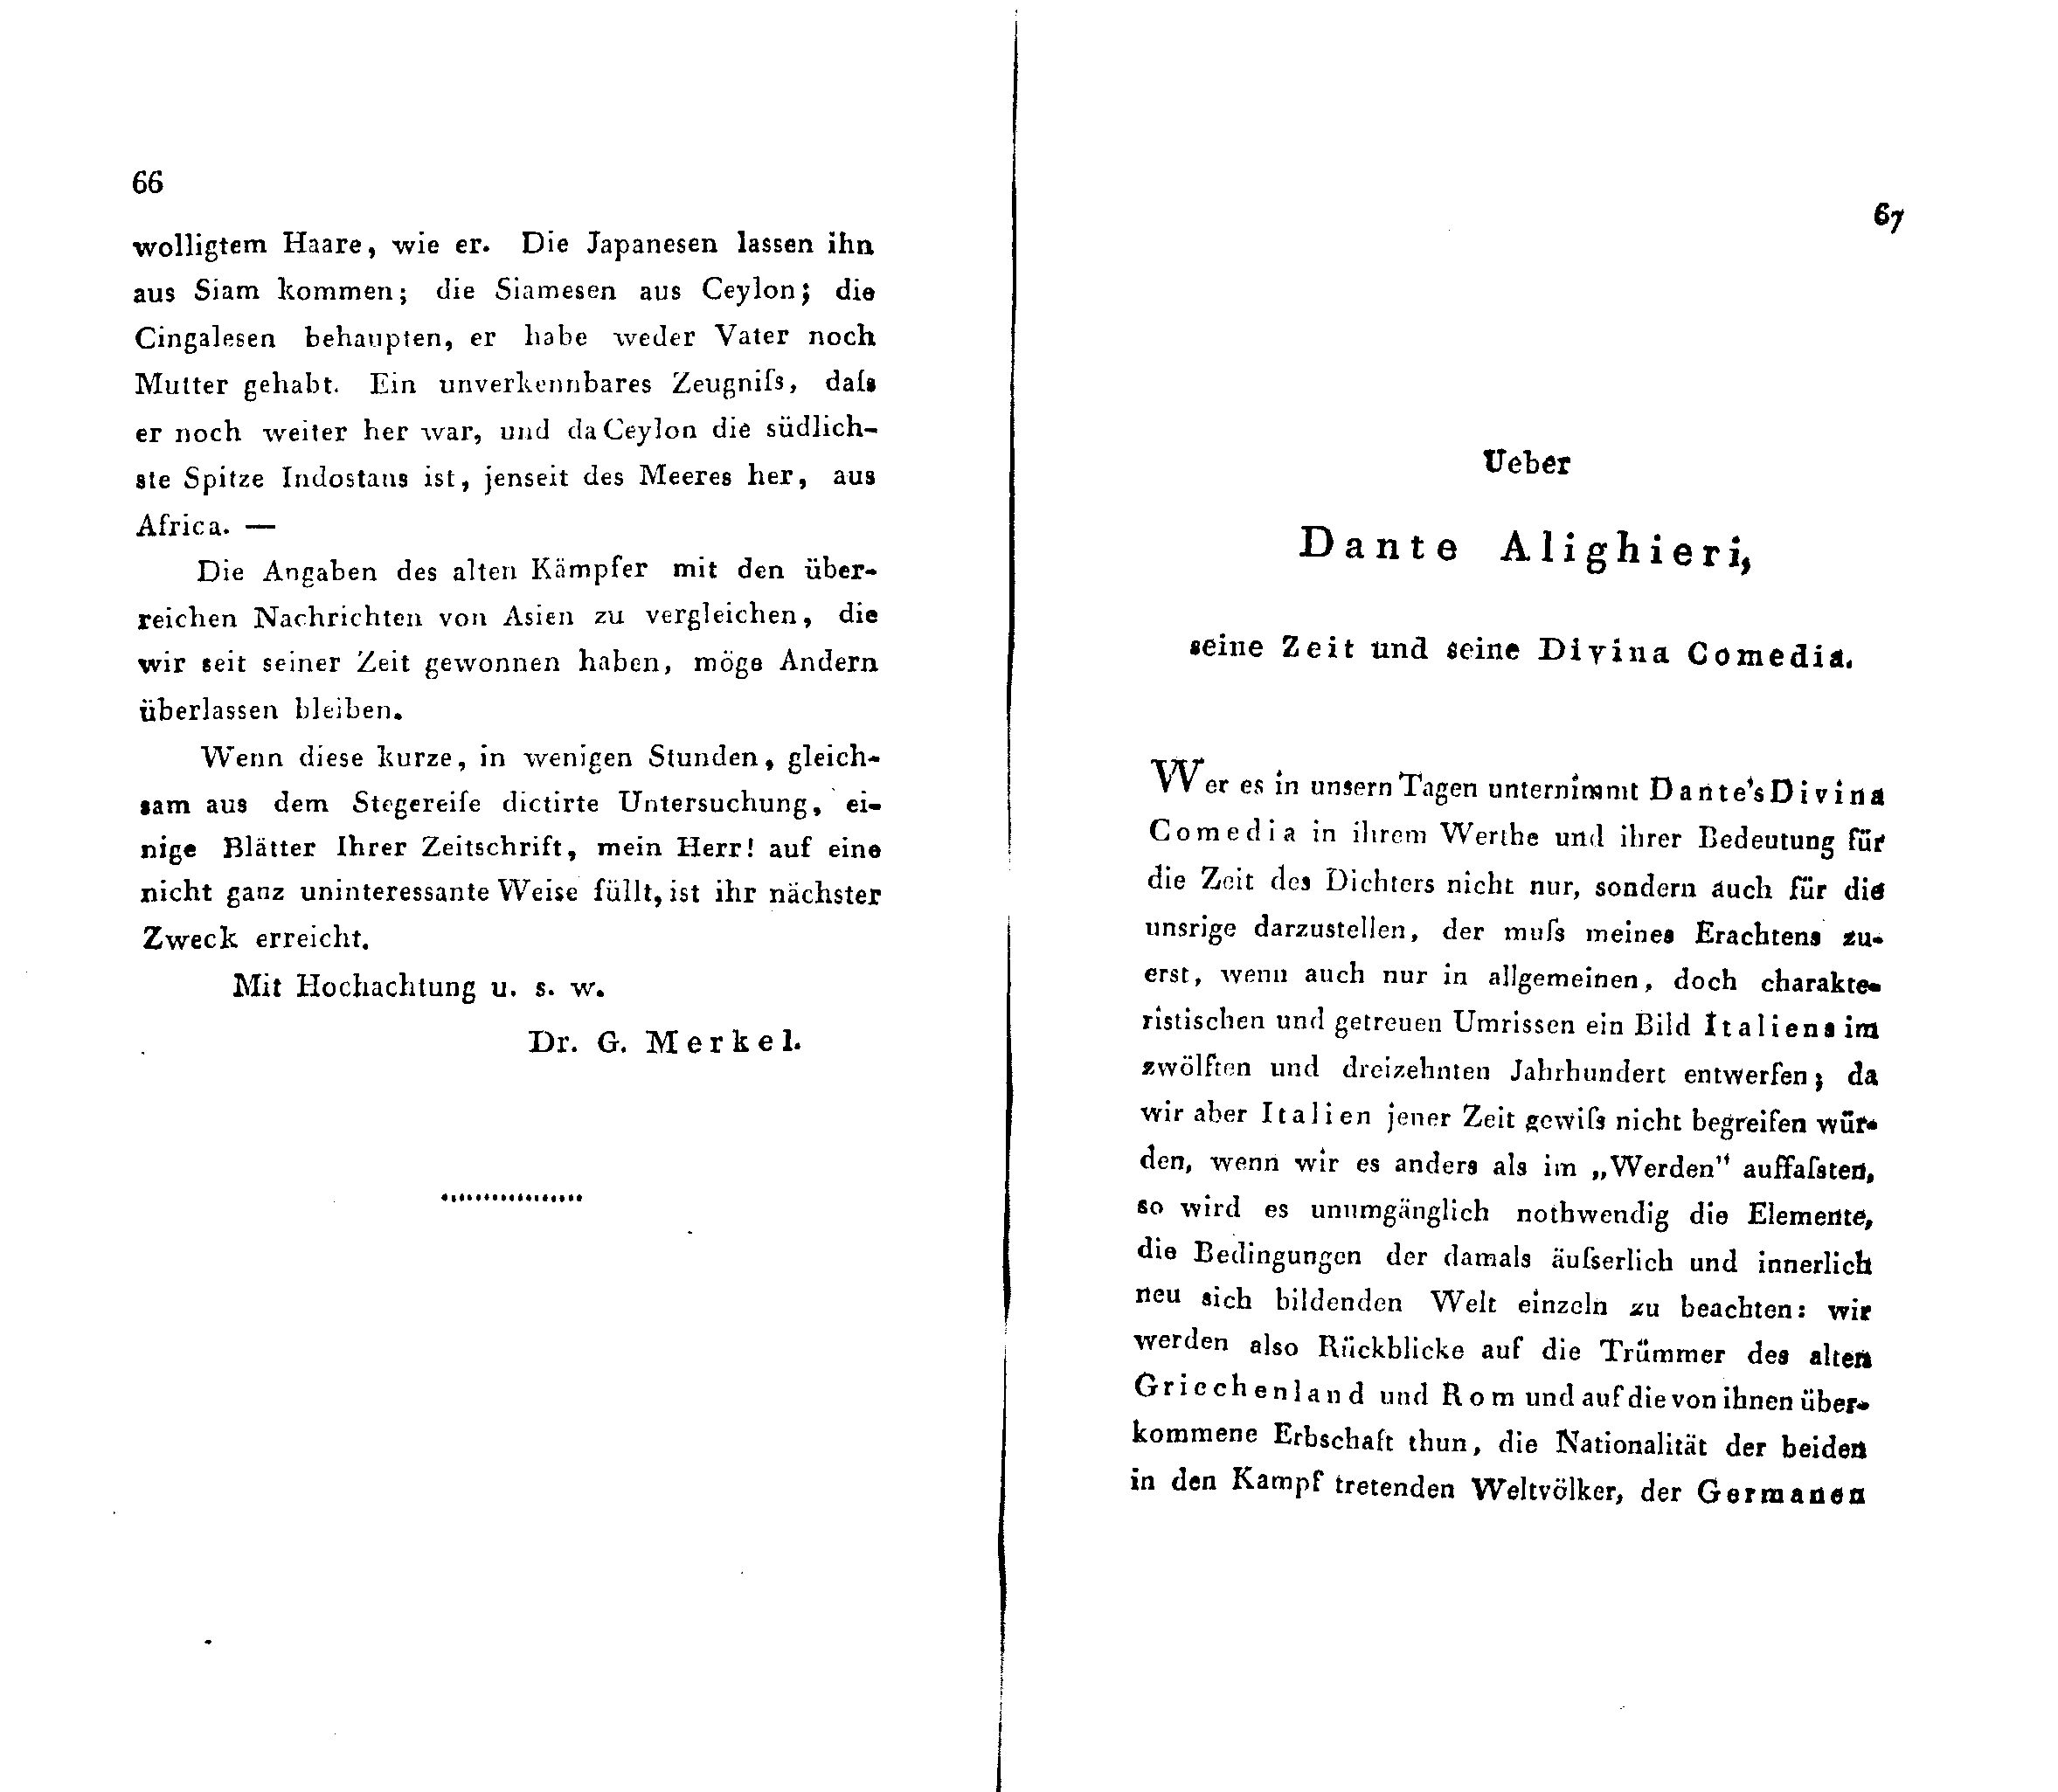 Ueber Dante Alighieri, seine Zeit und seine Divina Comedia (1824 – 1825) | 1. (66-67) Põhitekst